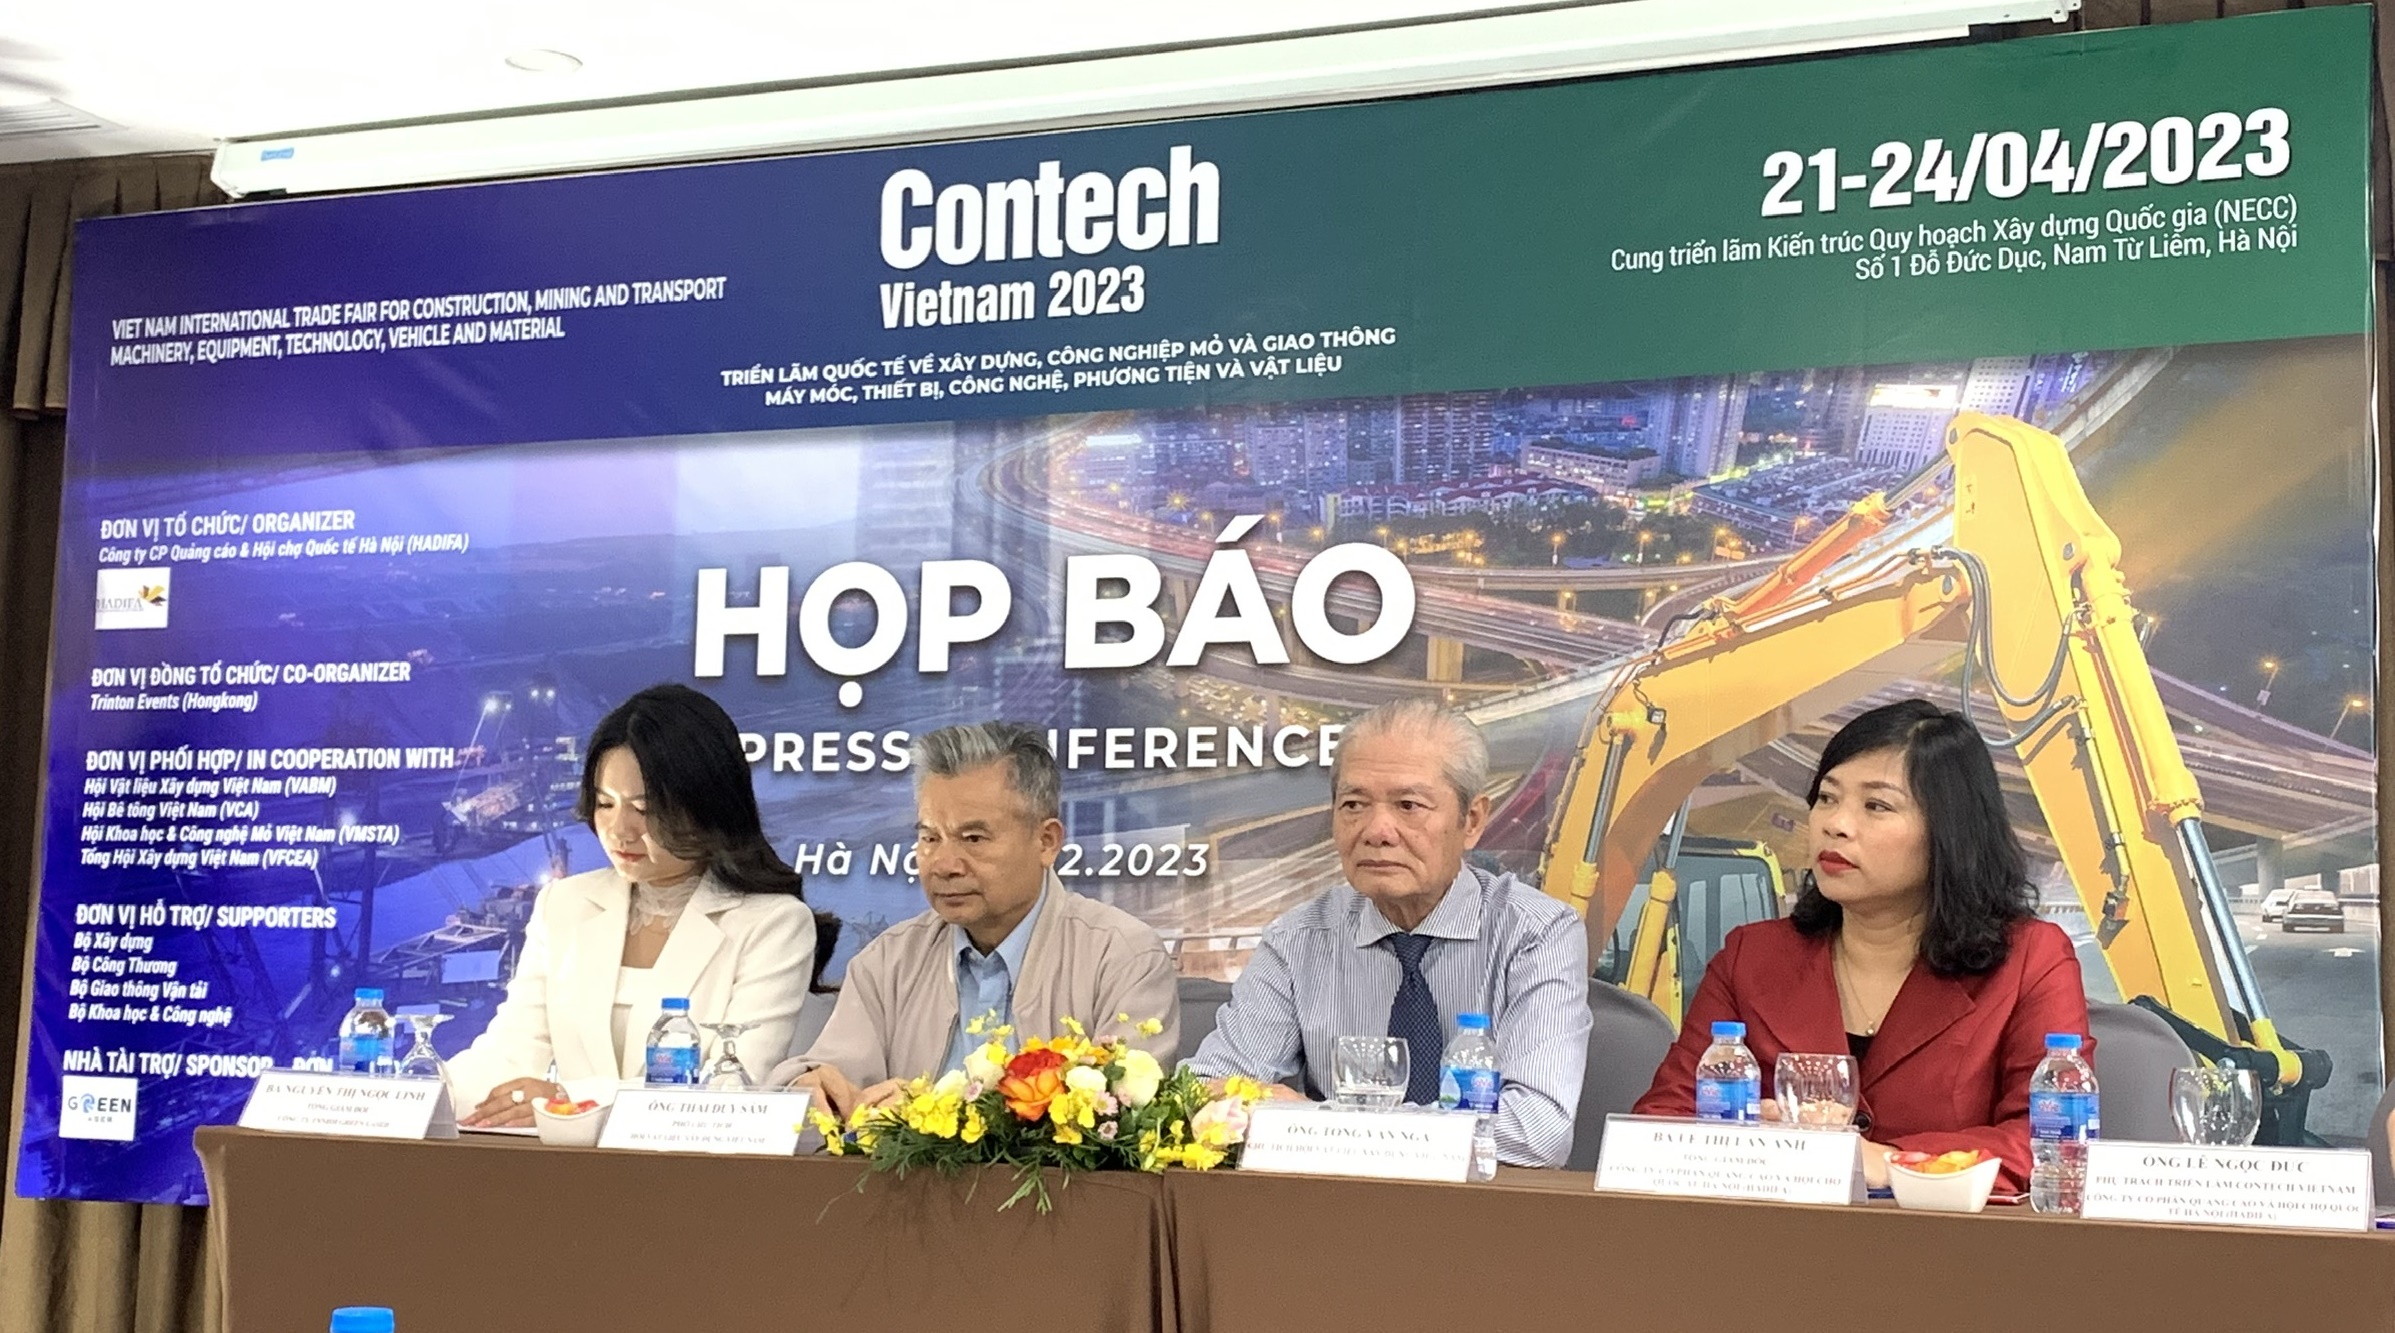 Sắp diễn ra Triển lãm Quốc tế Contech VietNam 2023 tại Hà Nội